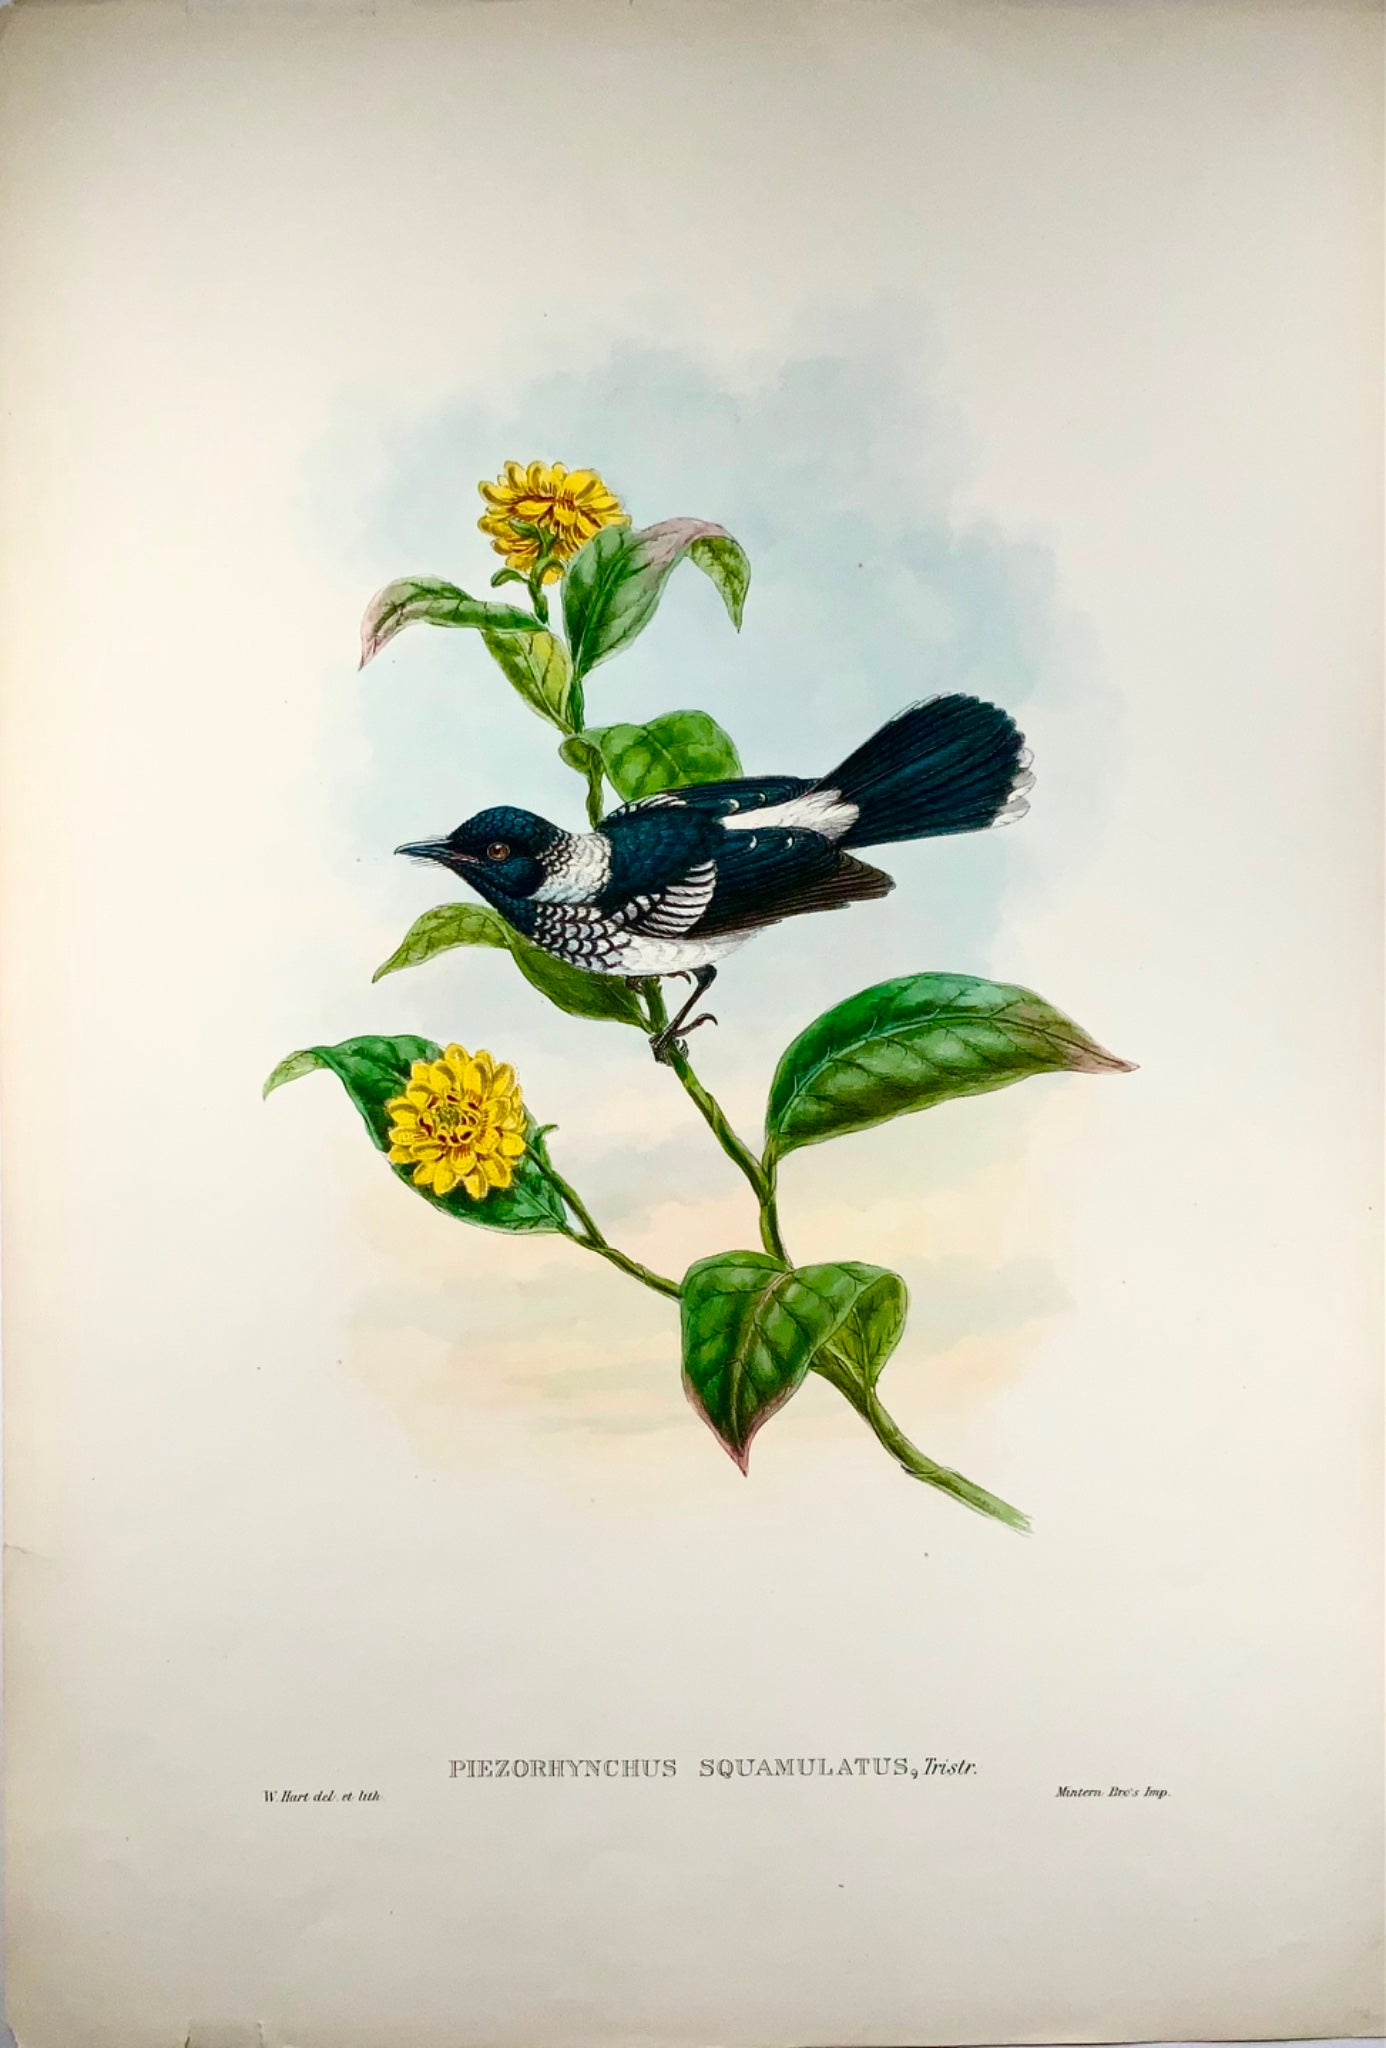 1888 Pigliamosche pezzato, John Gould (b1804), magnifica litografia colorata a mano, ornitologia 